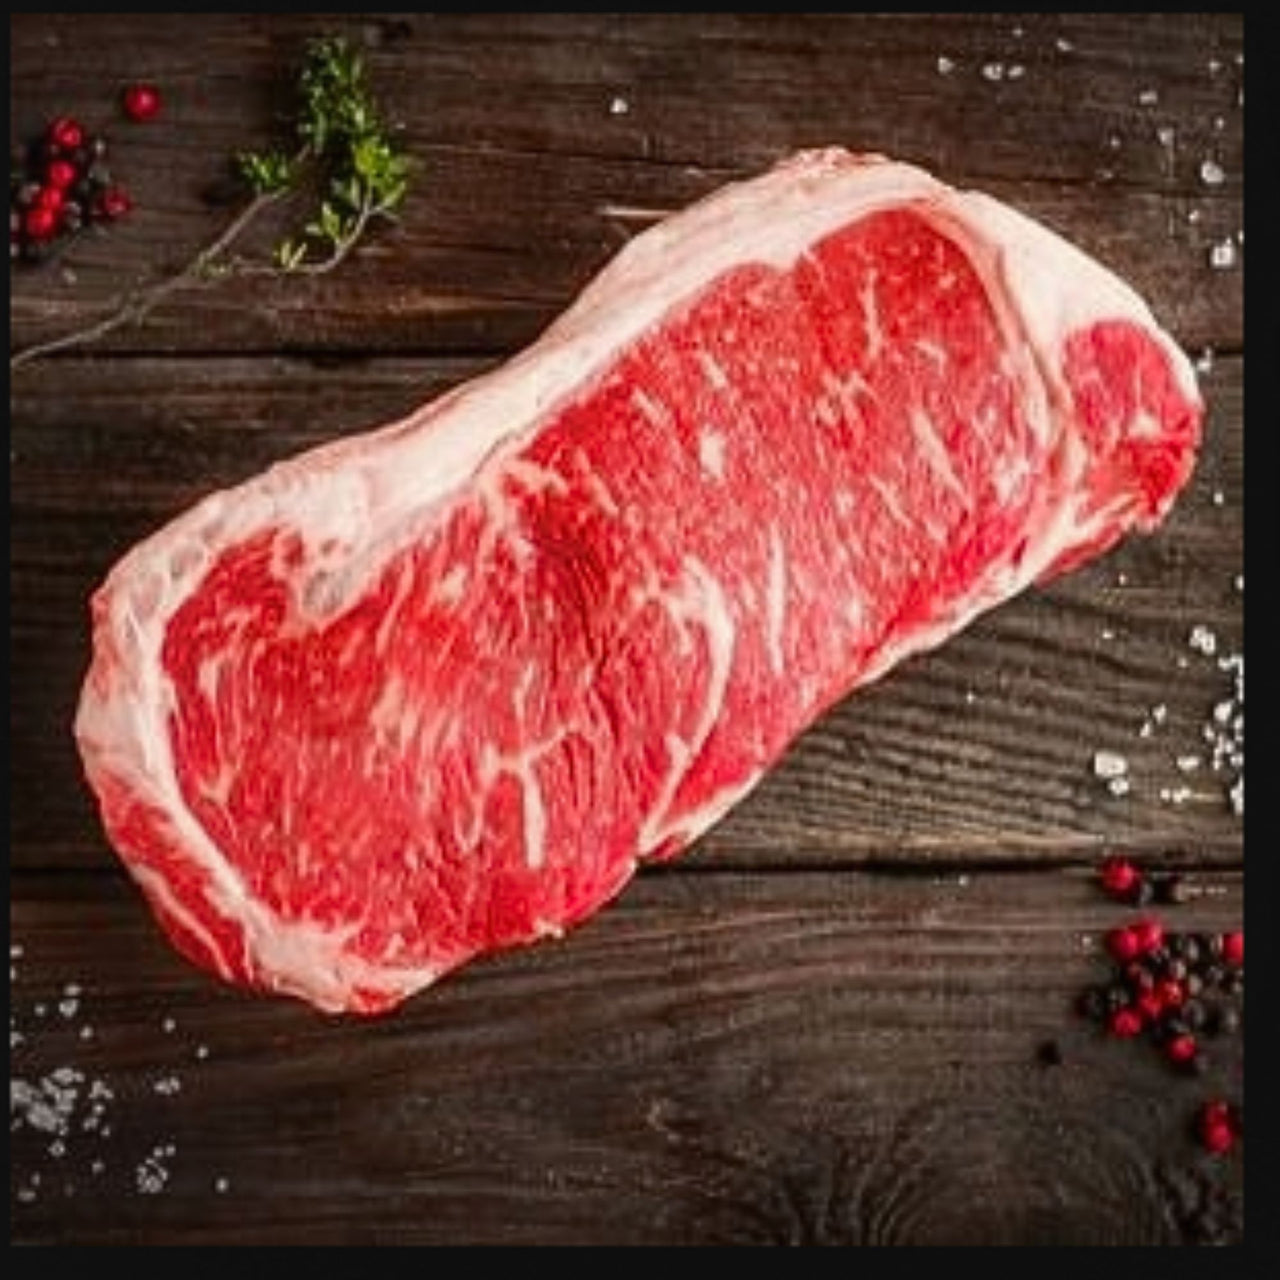 Image of AAA Striploin Steak 284g  | 10 oz